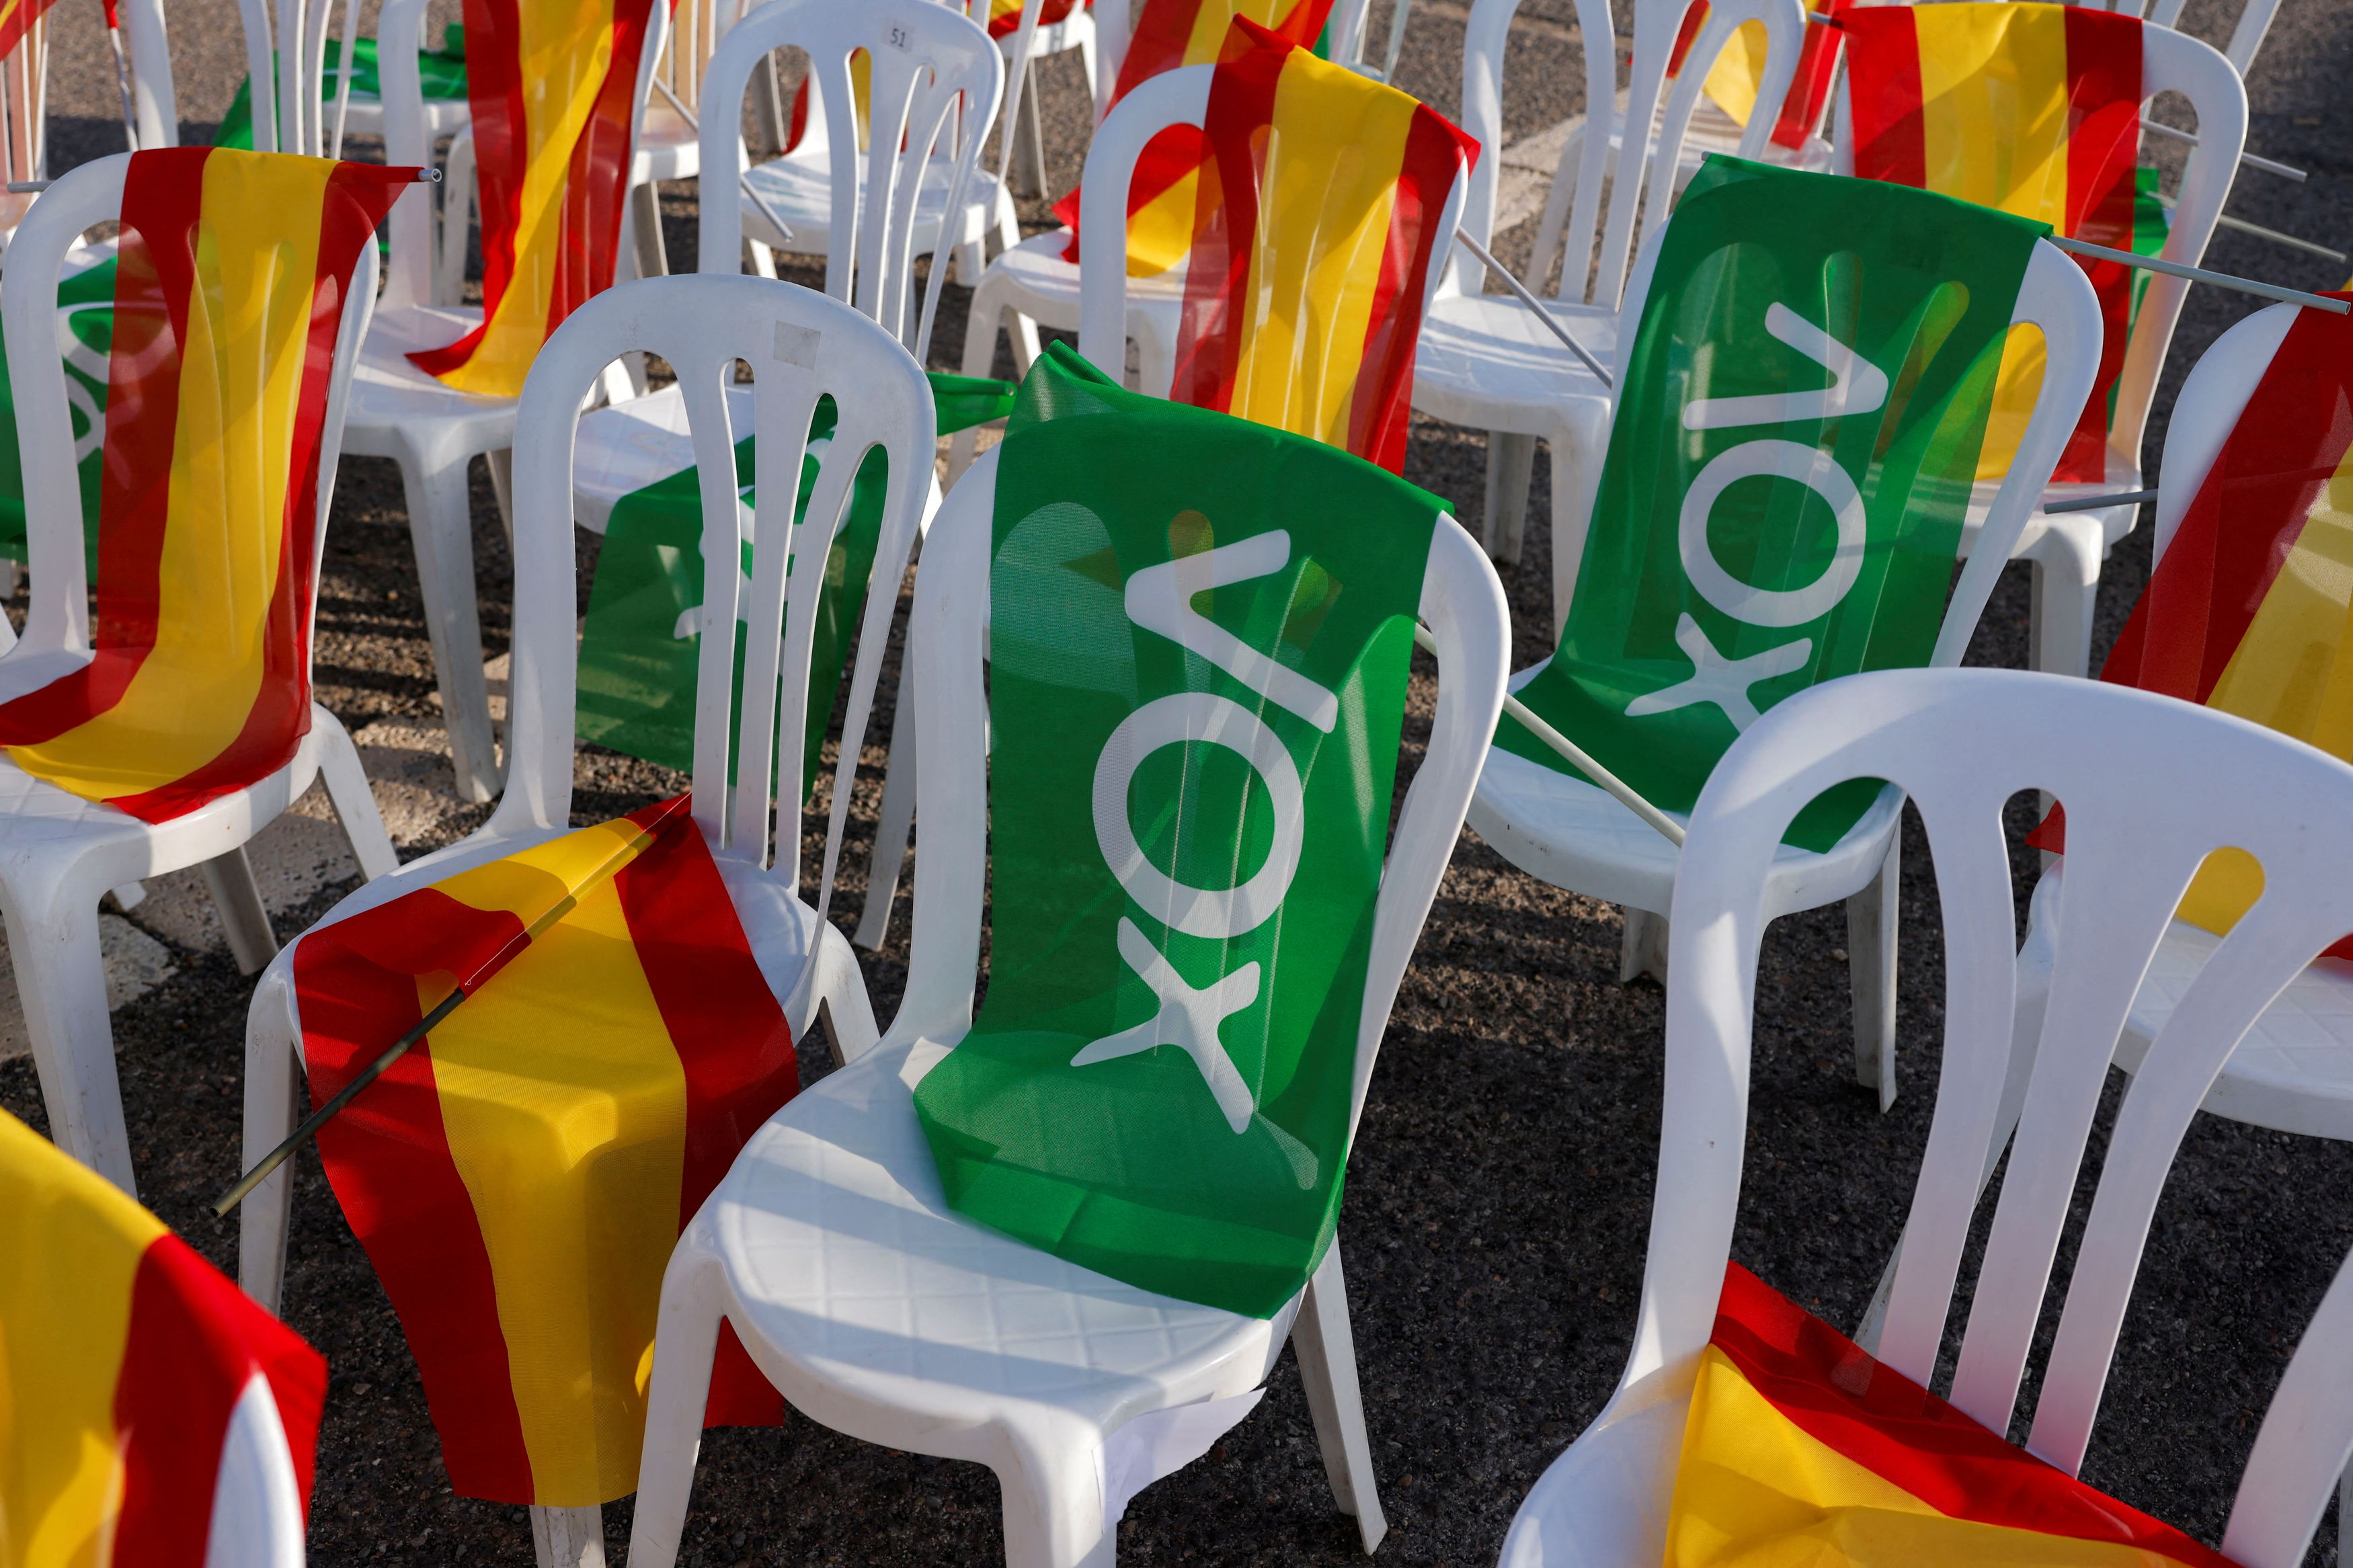 Εκλογές στην Ισπανία: Θα βάλει το Λαϊκό Κόμμα την ακροδεξιά στην κυβέρνηση για πρώτη φορά από τον Φράνκο και μετά;